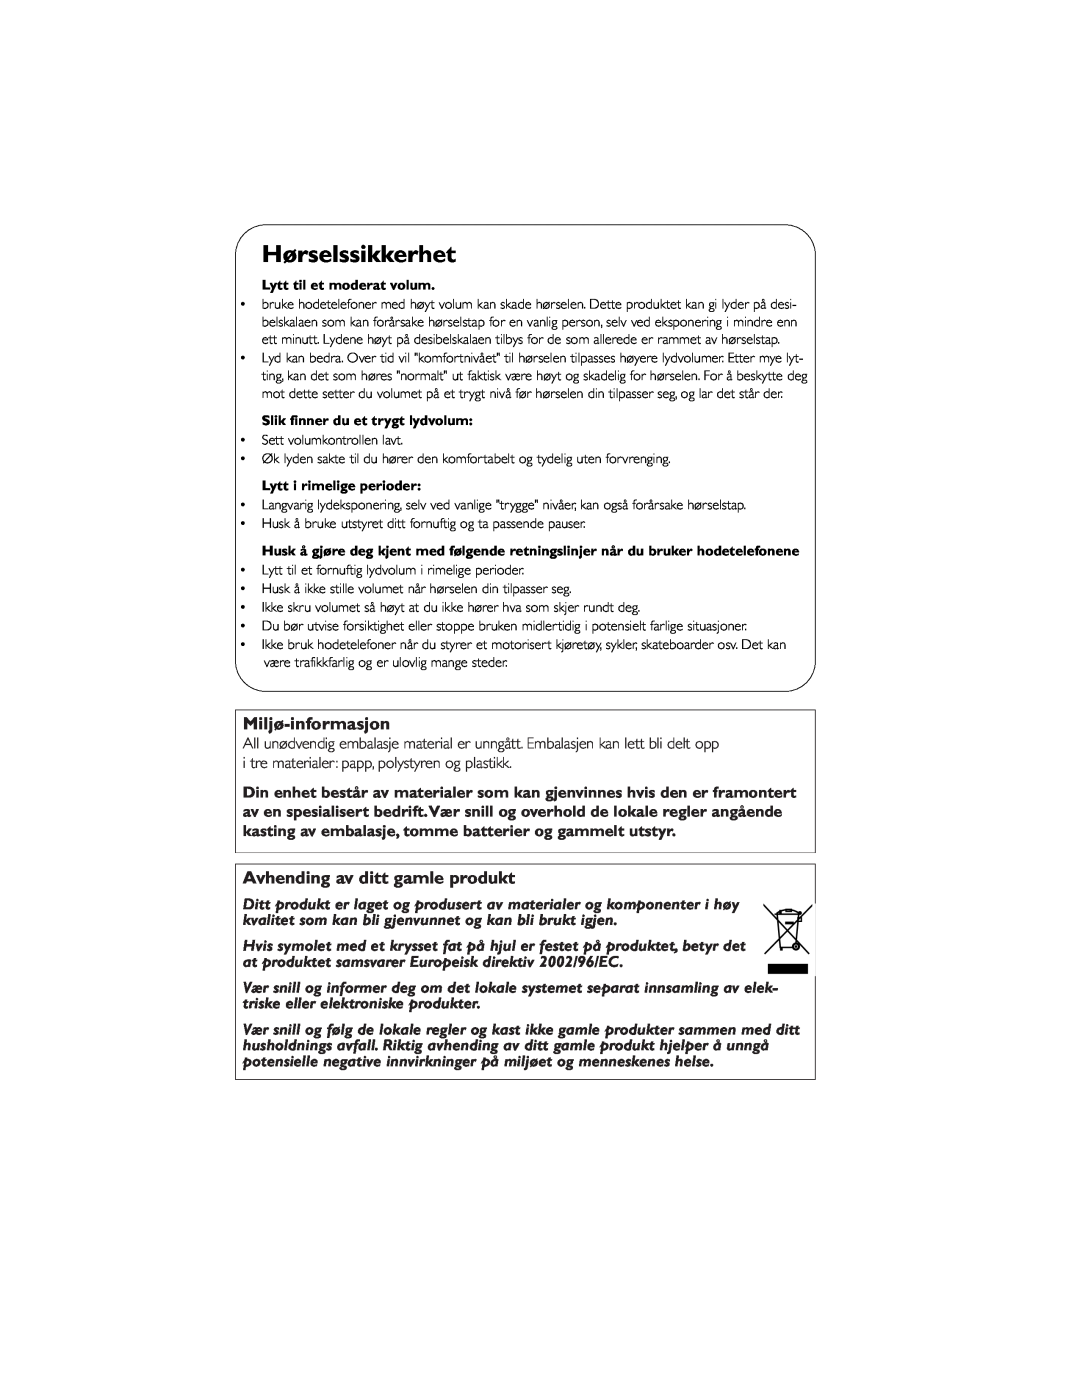 Philips AE5900 user manual Hørselssikkerhet, Miljø-informasjon, Avhending av ditt gamle produkt 